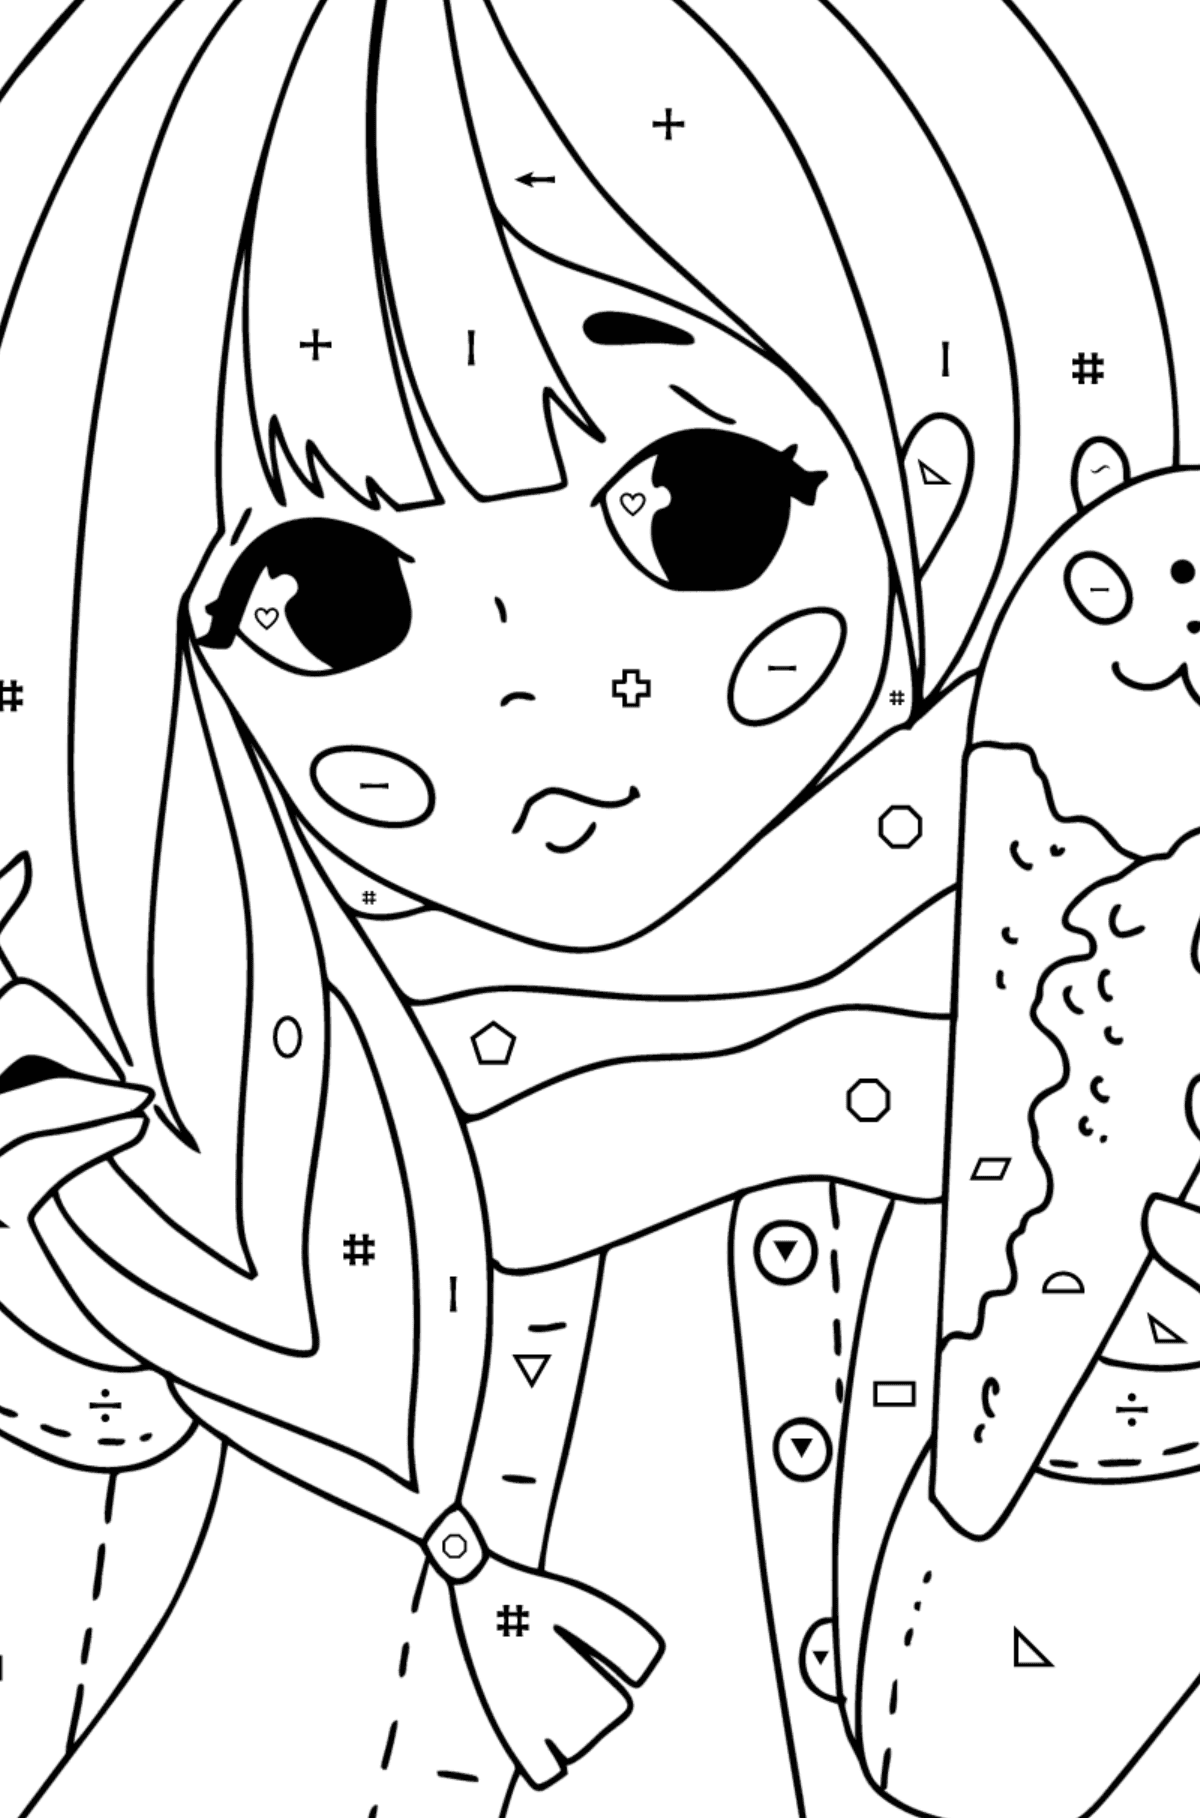 Kolorowanka Ładna dziewczyna anime - Kolorowanie według symboli i figur geometrycznych dla dzieci